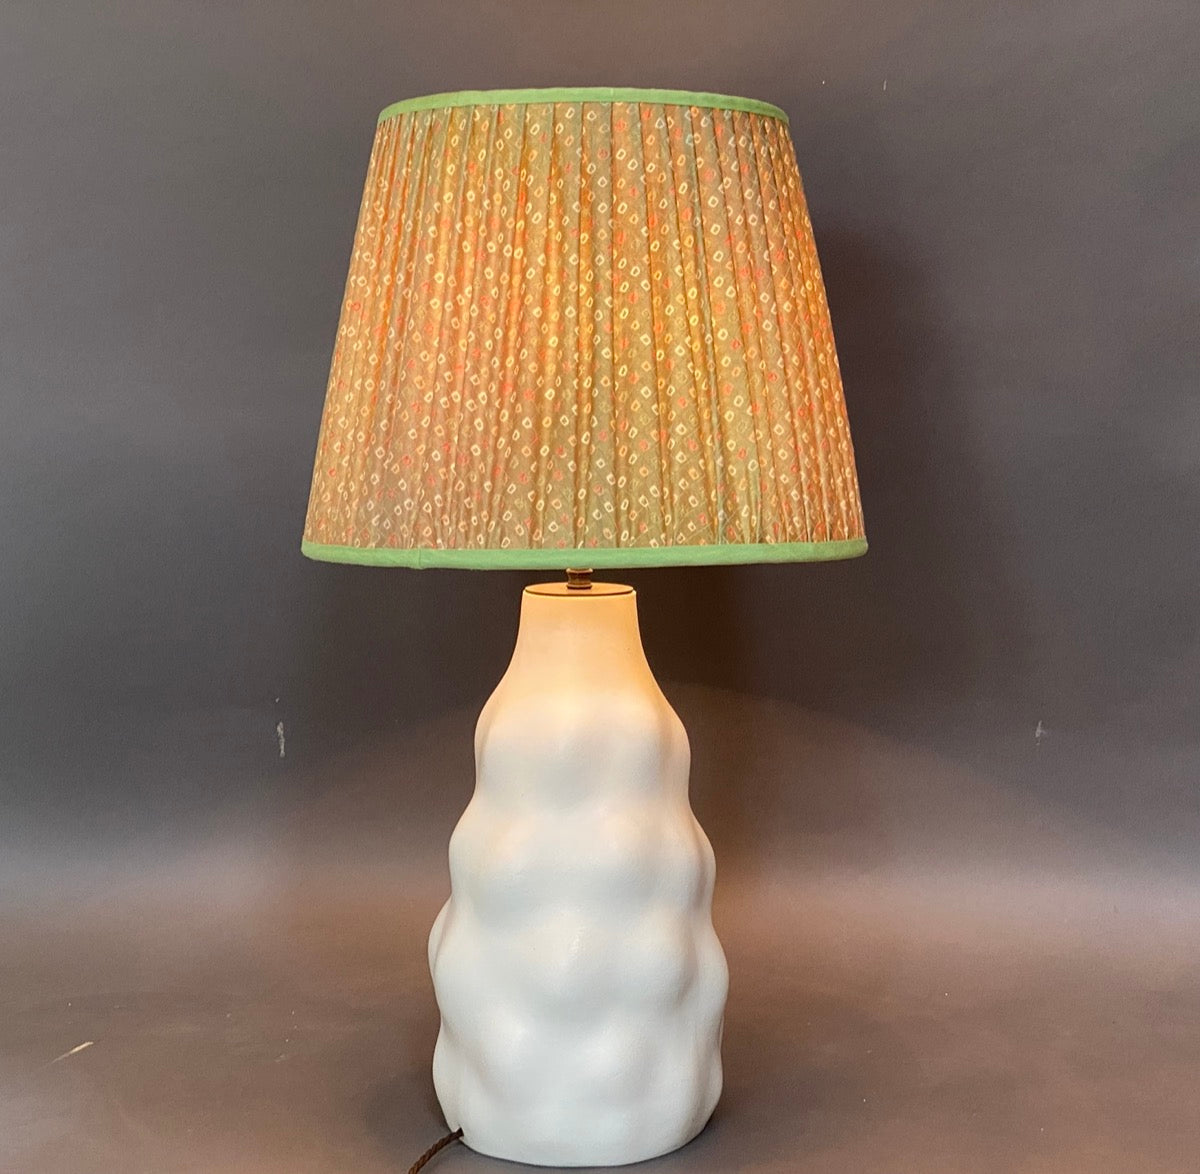 Green shibori lampshade on lamp